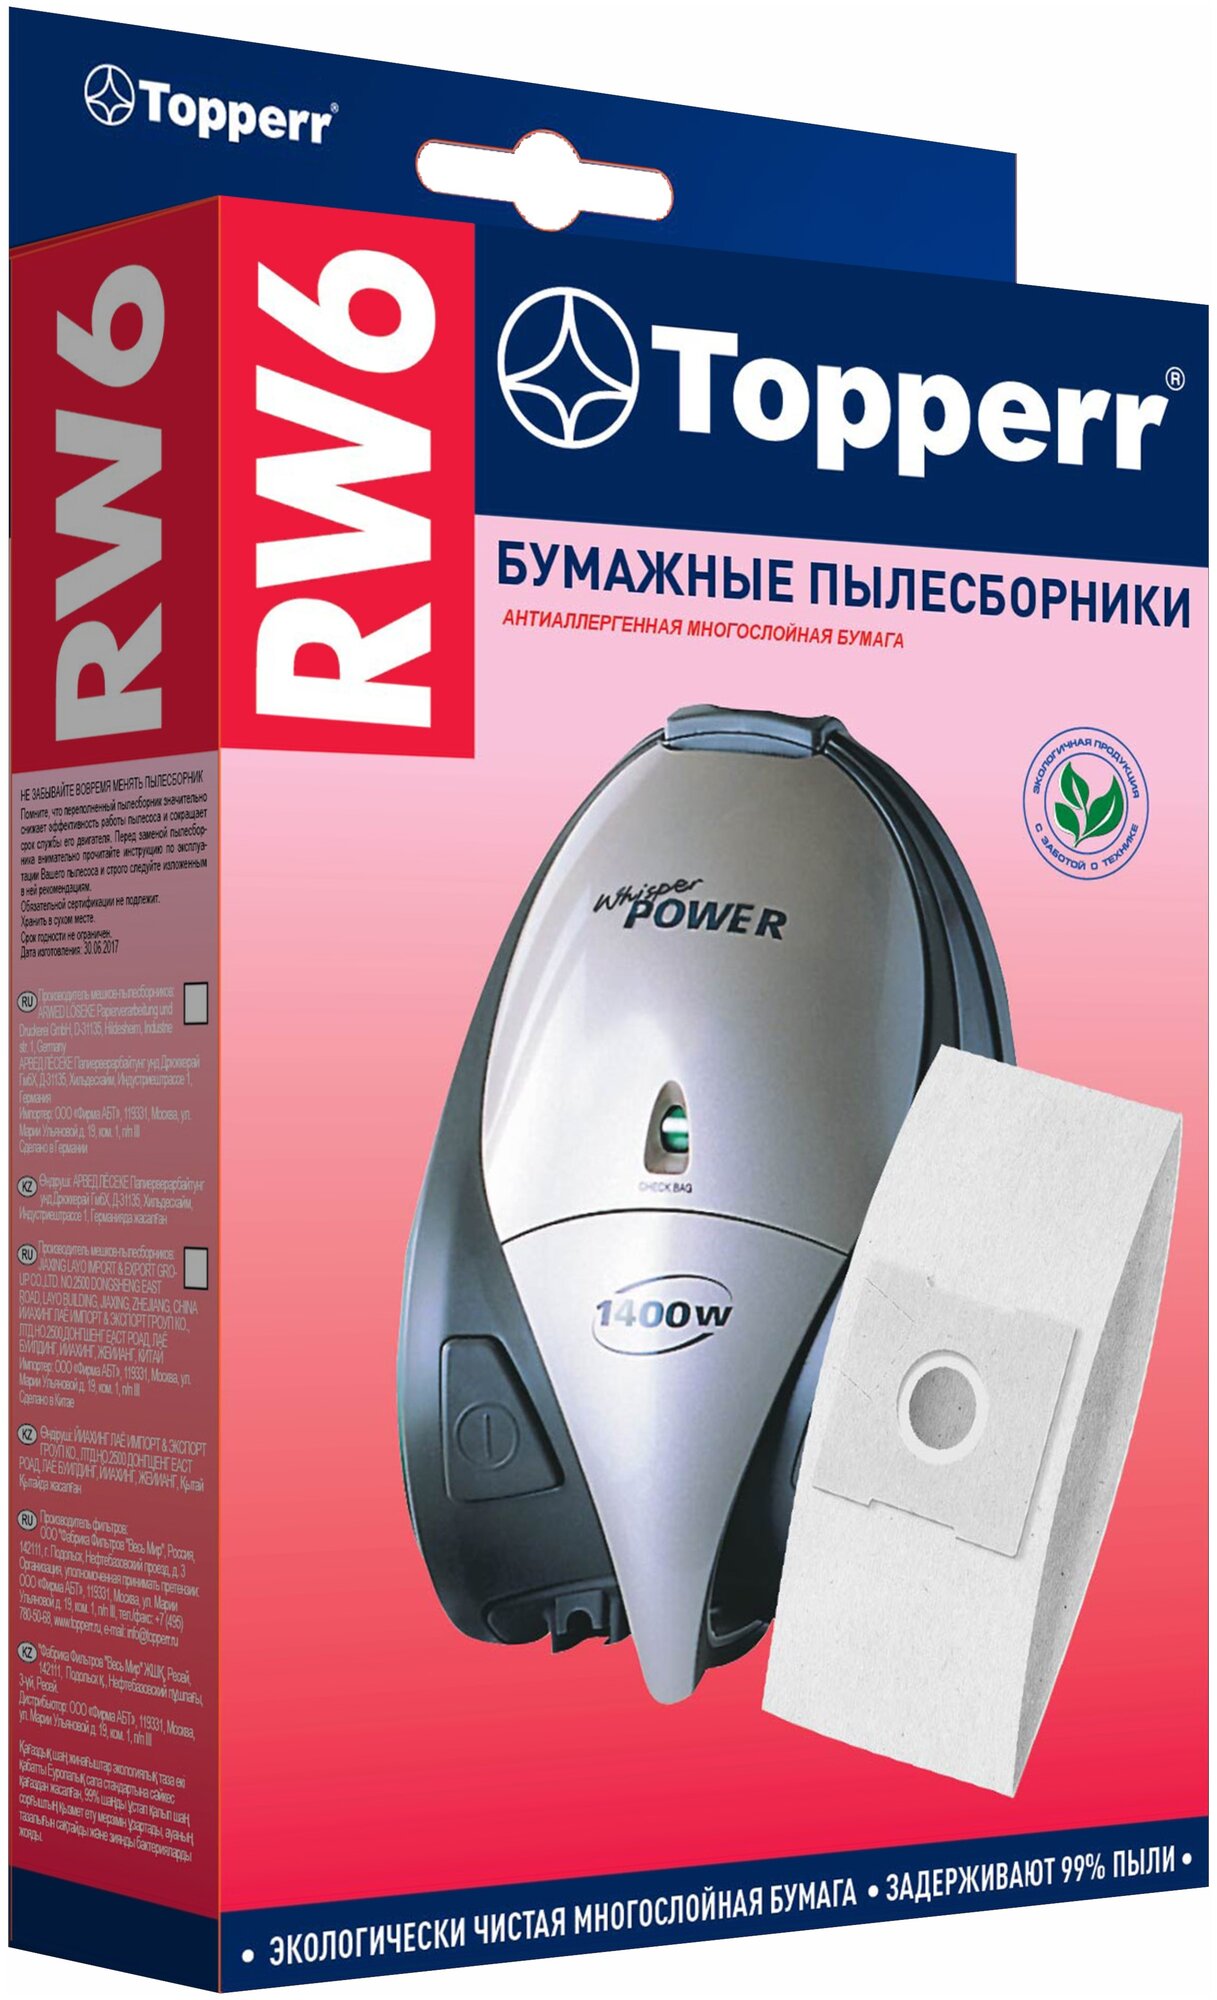 Topperr Бумажные пылесборники RW6, 5 шт.